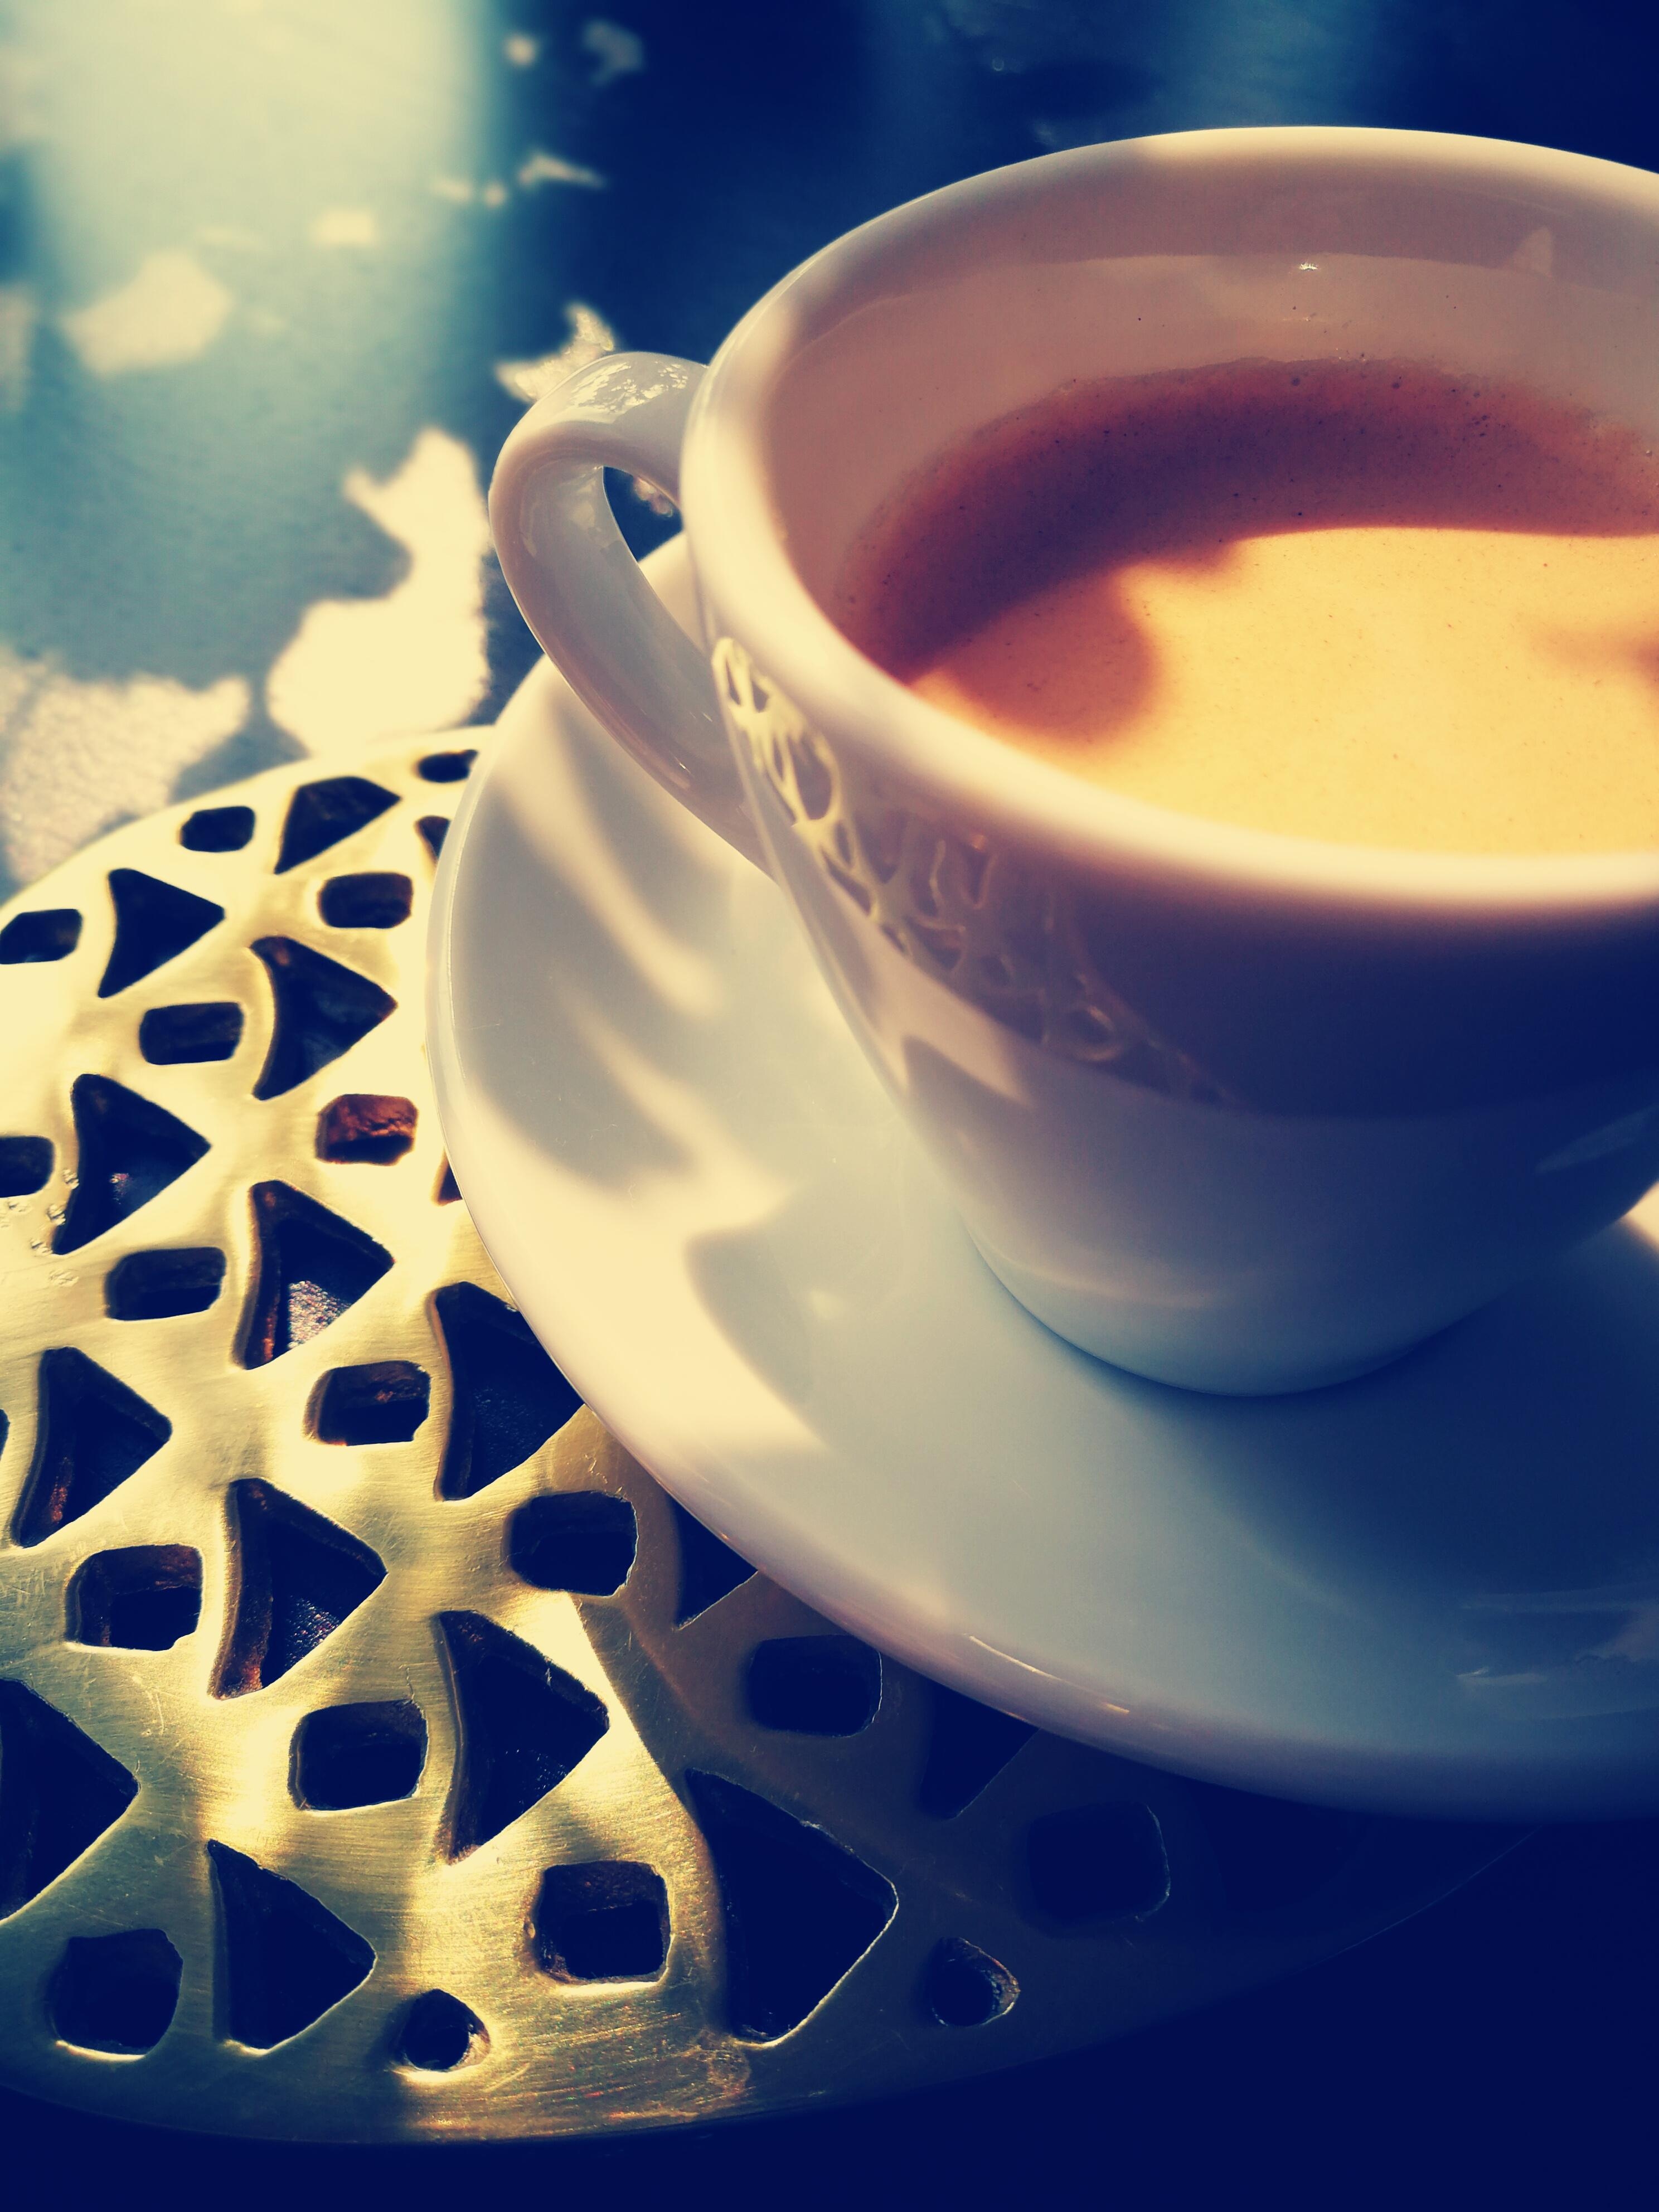 ...für manche ist es nur Kaffee, aber für mich immer was besonderes❤️
#Kaffeeliebhaber #Afternoon 